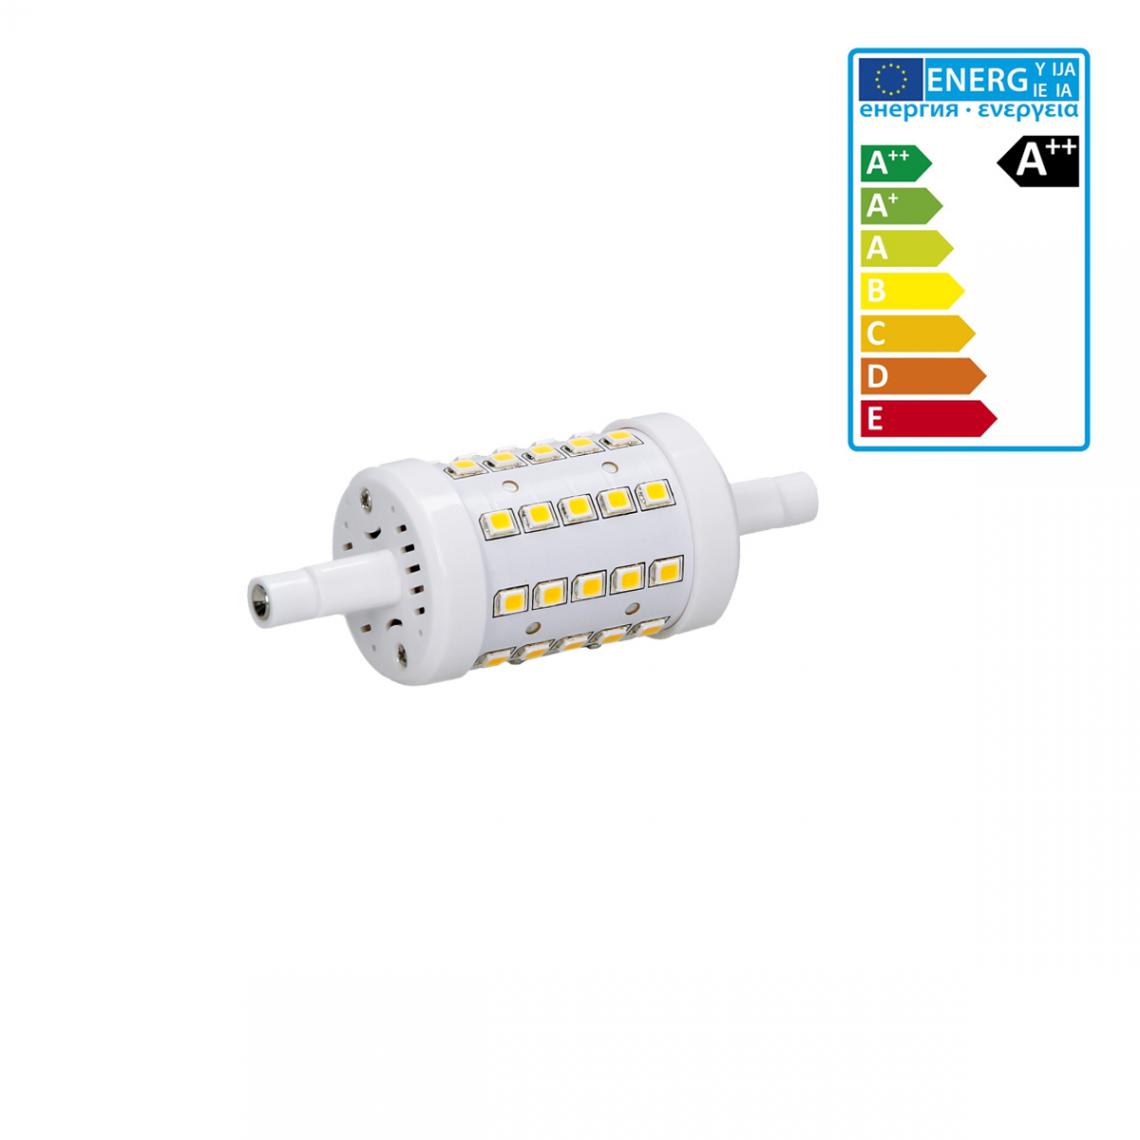 Ecd Germany - ECD Germany R7S Lampe LED 7W 78mm 480 lumens AC 220-240 angle de faisceau 360 ° remplace 45W ampoule halogène réglable blanc chaud - Tubes et néons